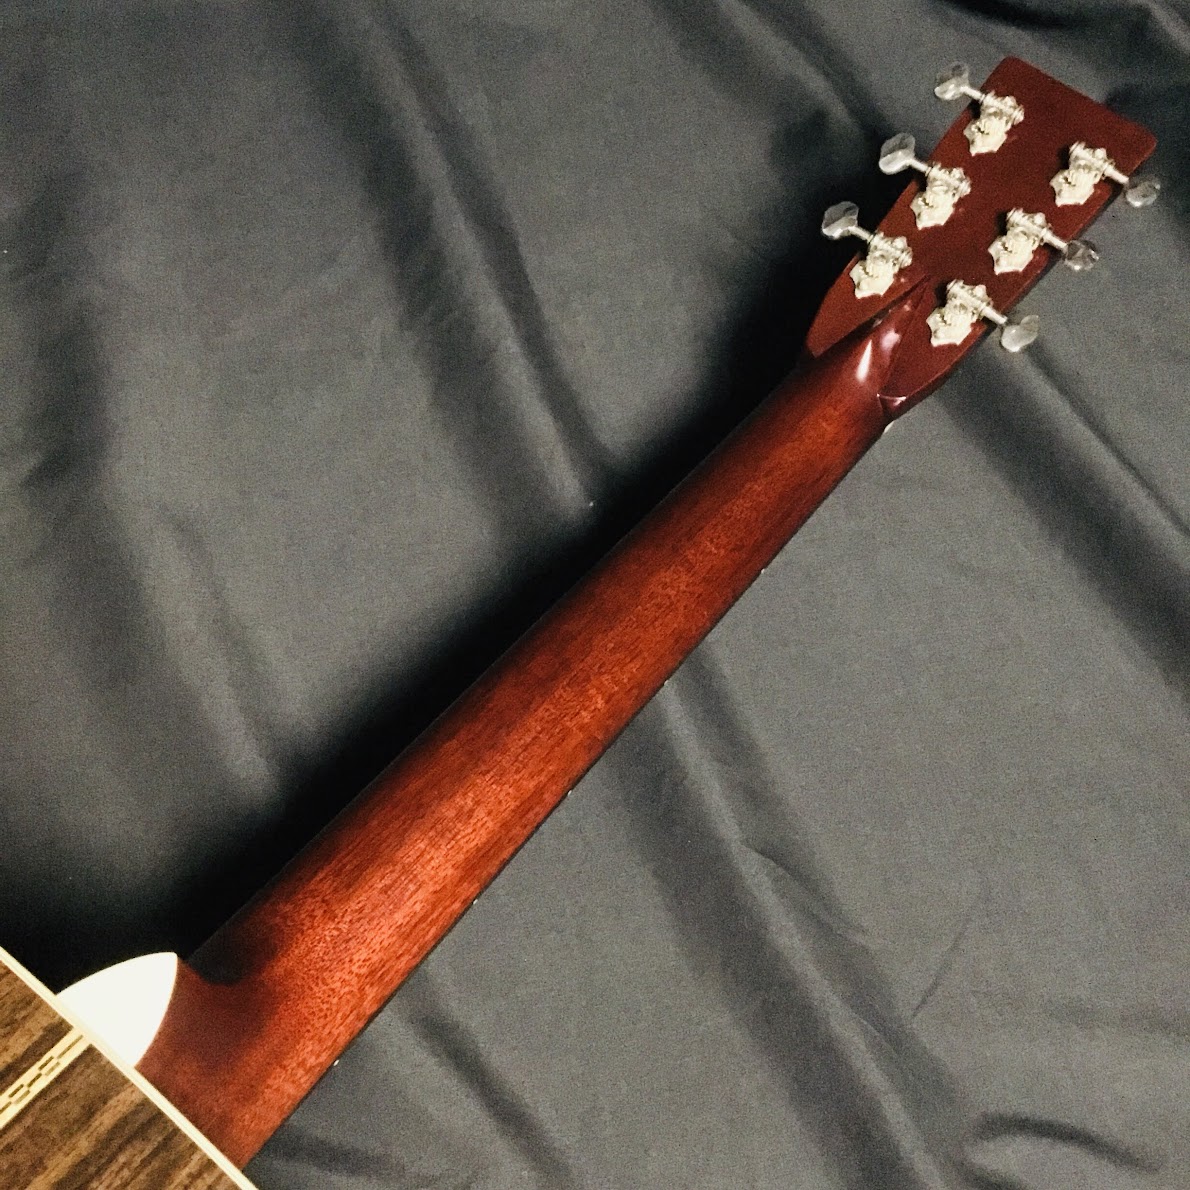 【プロ調整済み・希少】Inuyama Guitars 犬山ギター工房 限定モデルピックアップはseymou